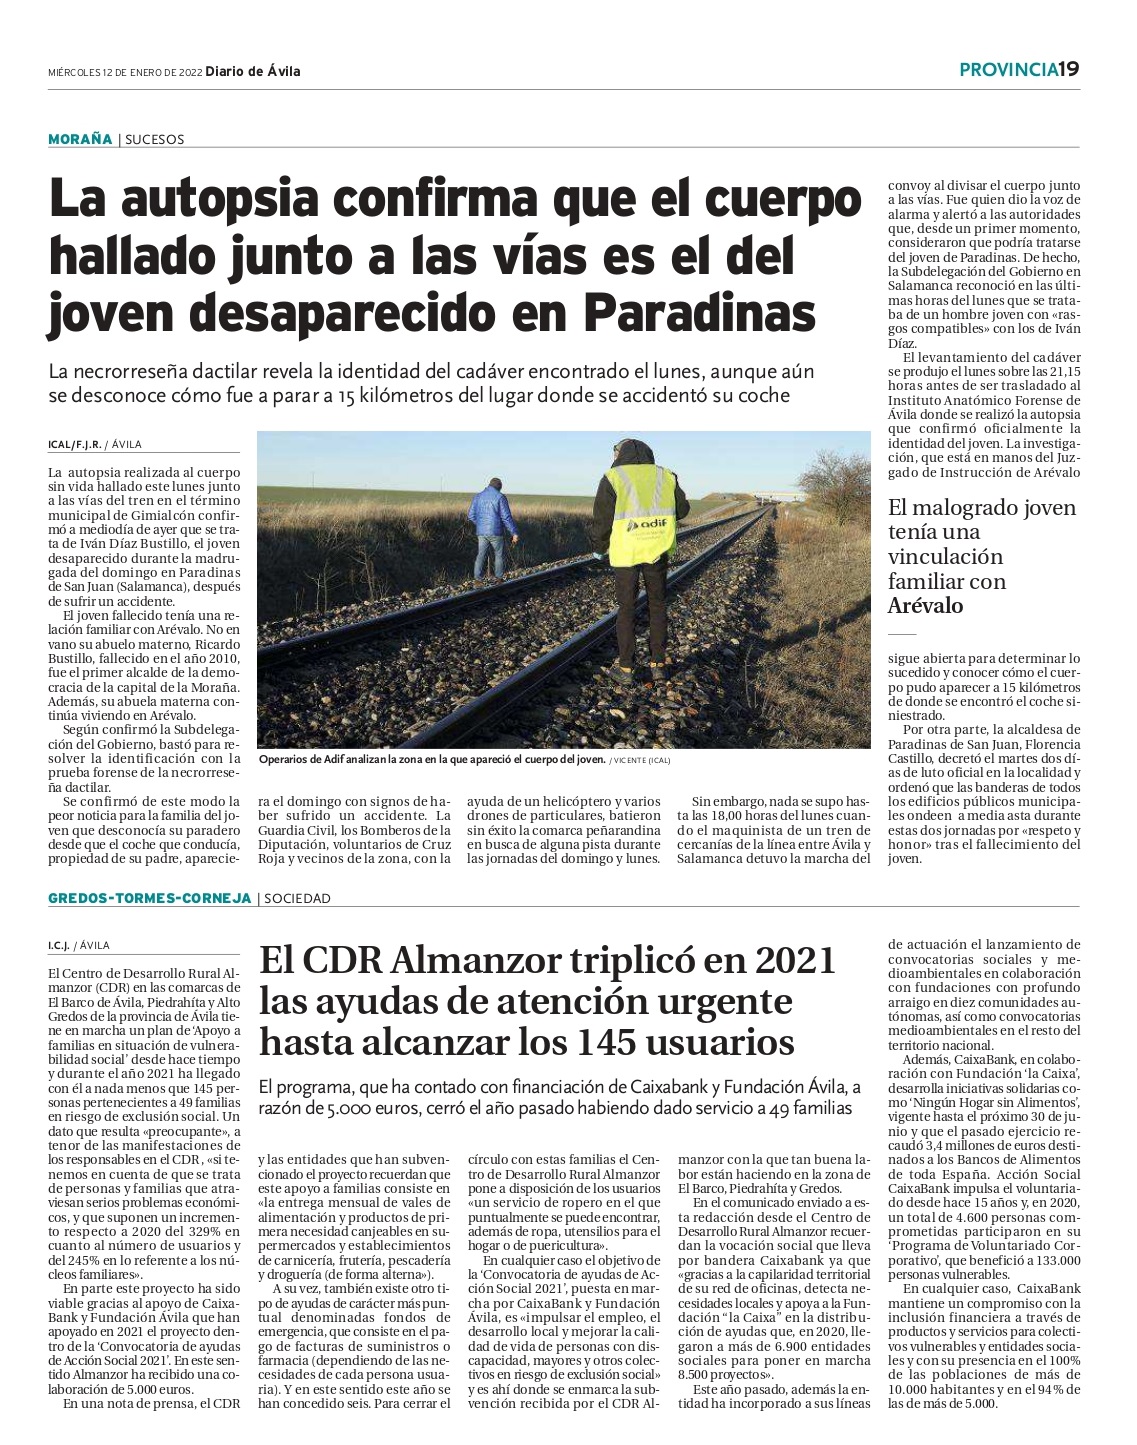 Página del periódico Diario de Ávila con el artículo de atención urgente de CDR Almanzor